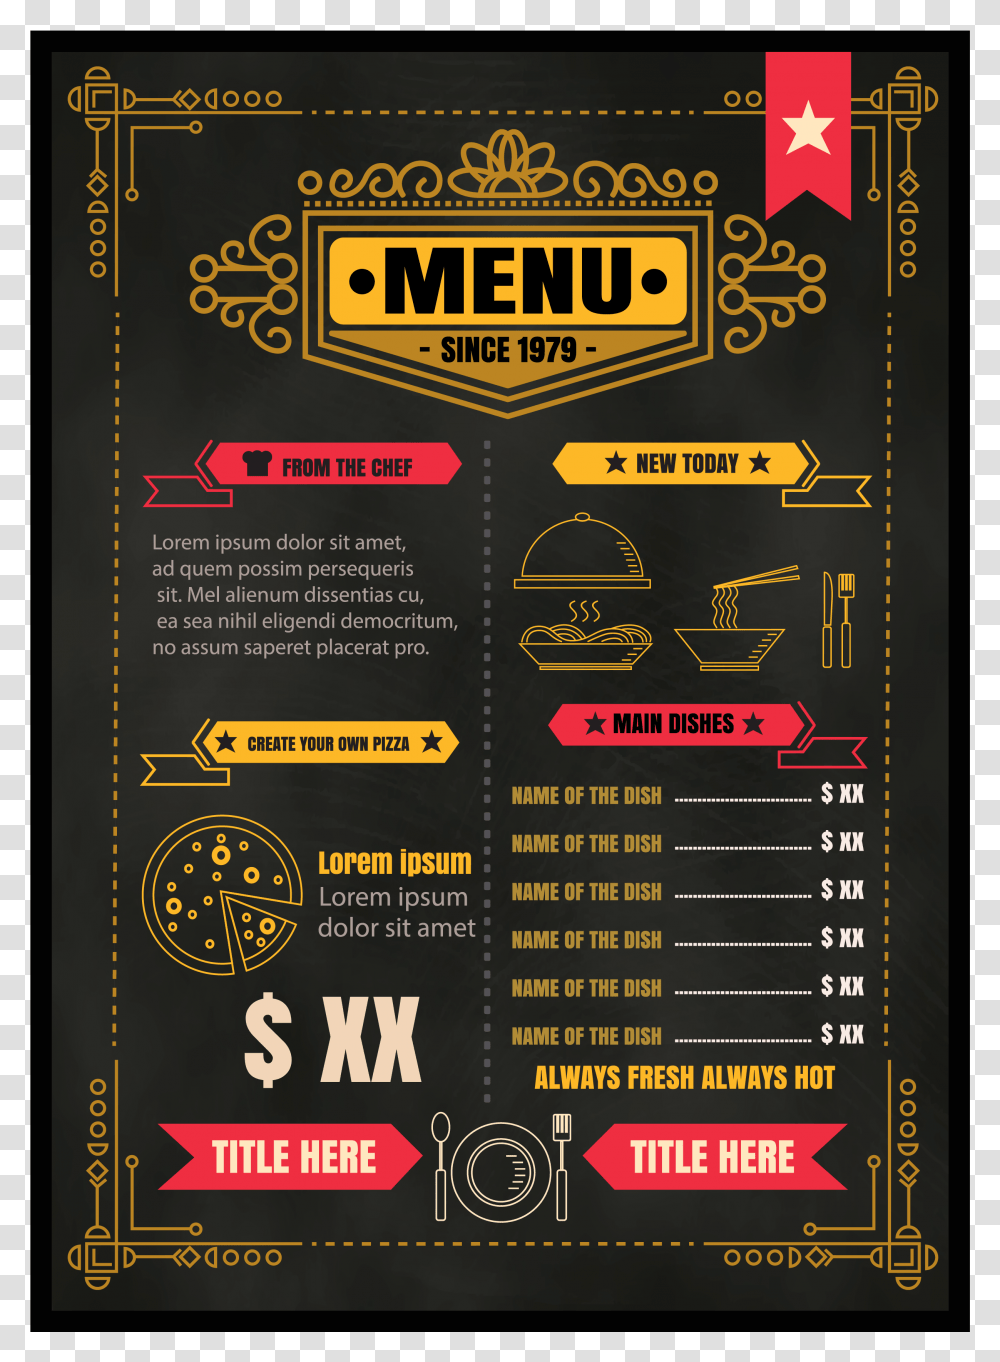 Brochure Vector Food Restaurant Chef Vector, Menu, Pac Man Transparent Png